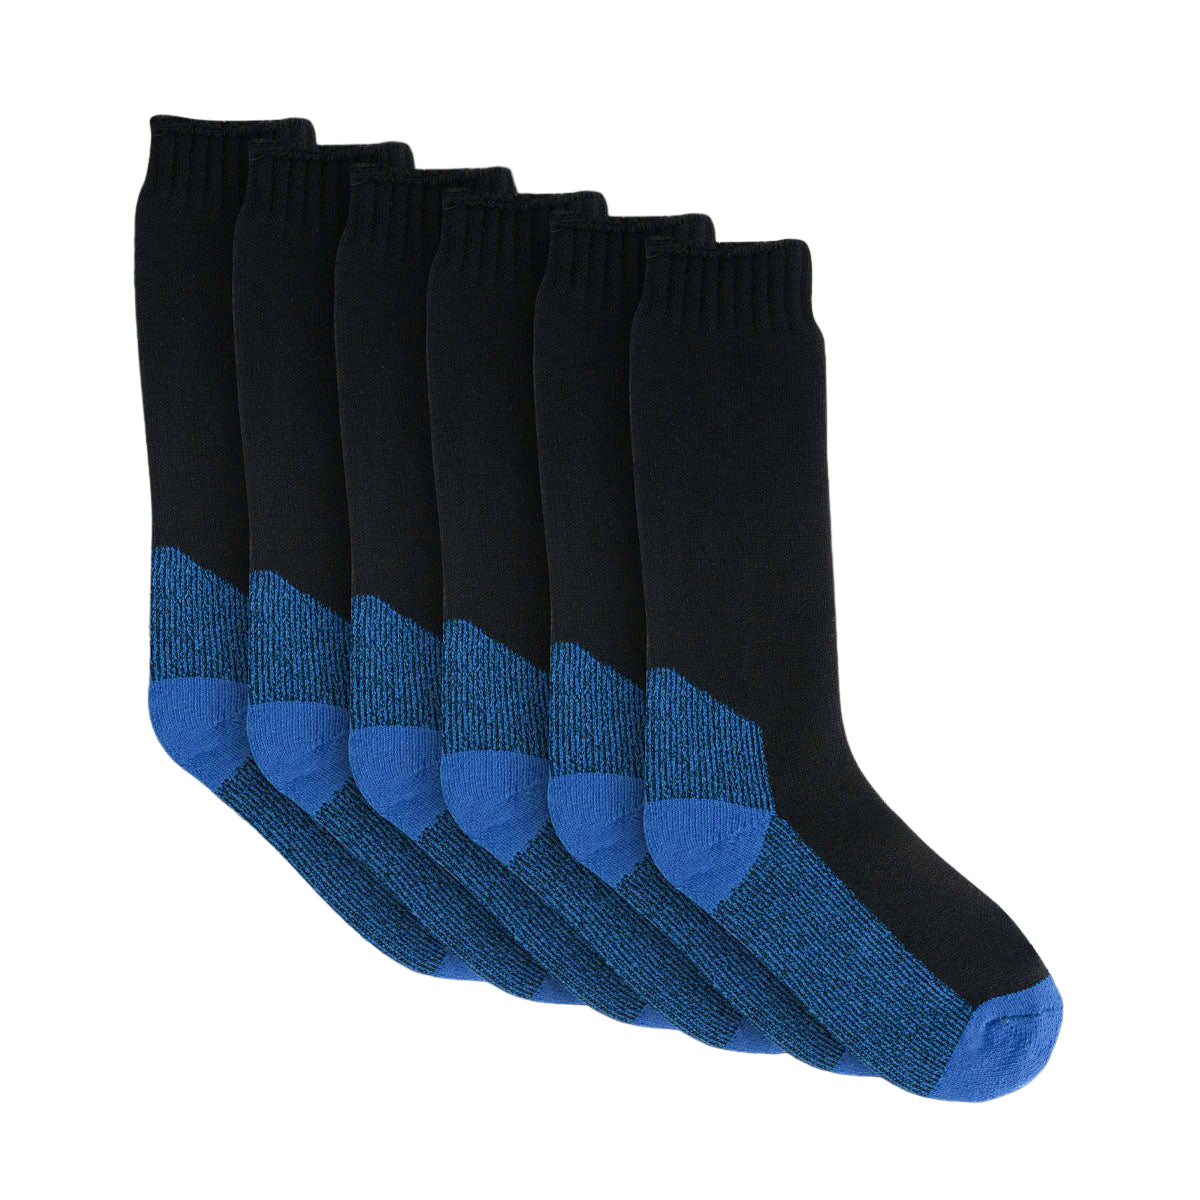 Premium 3 Pair Wool Socks Black Size 6-10 M01W0610-3BK by Moondyne